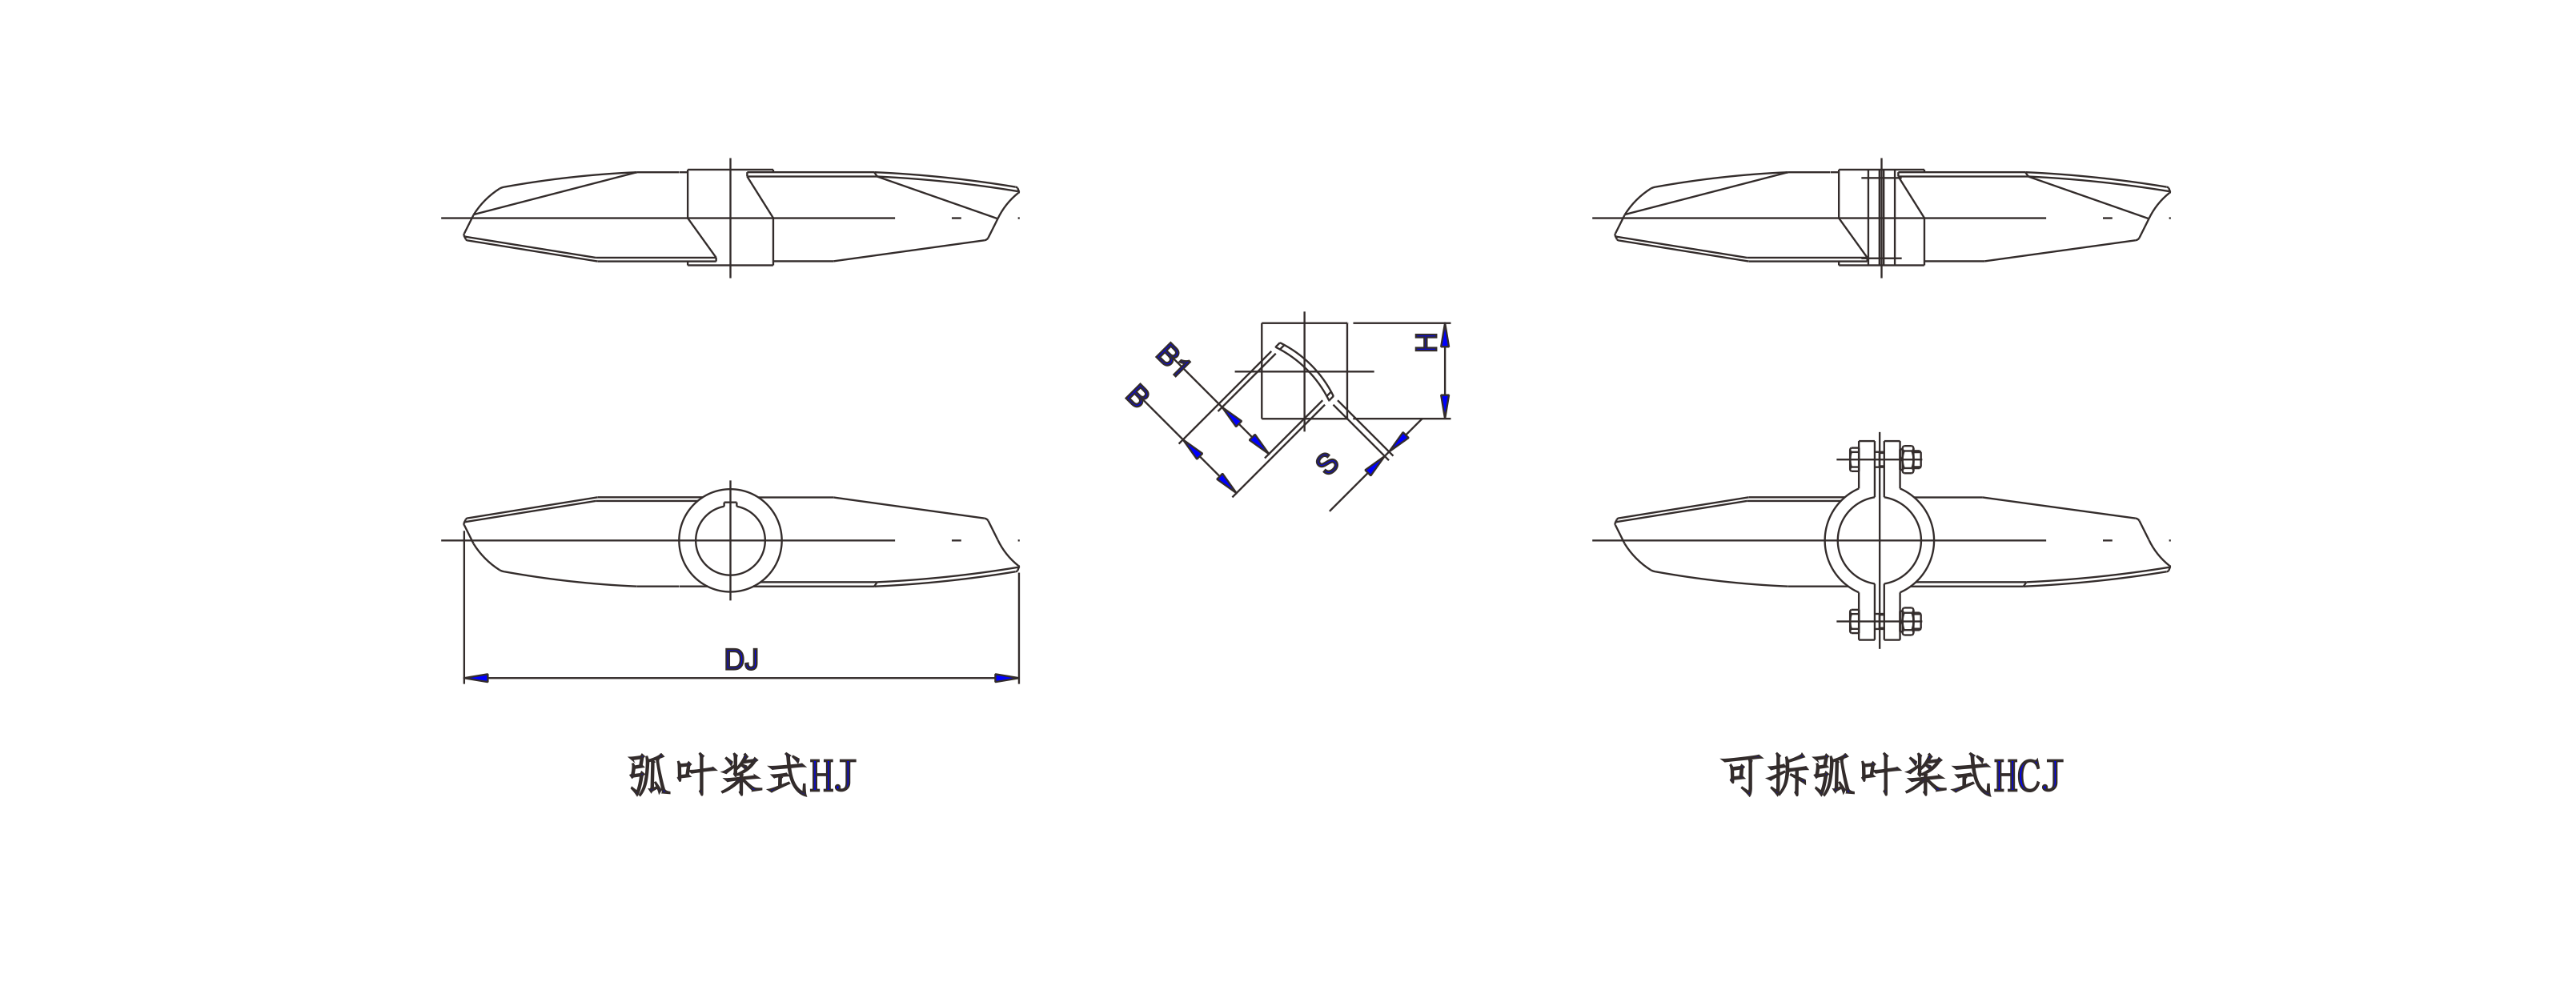   弧叶桨式搅拌器设计图